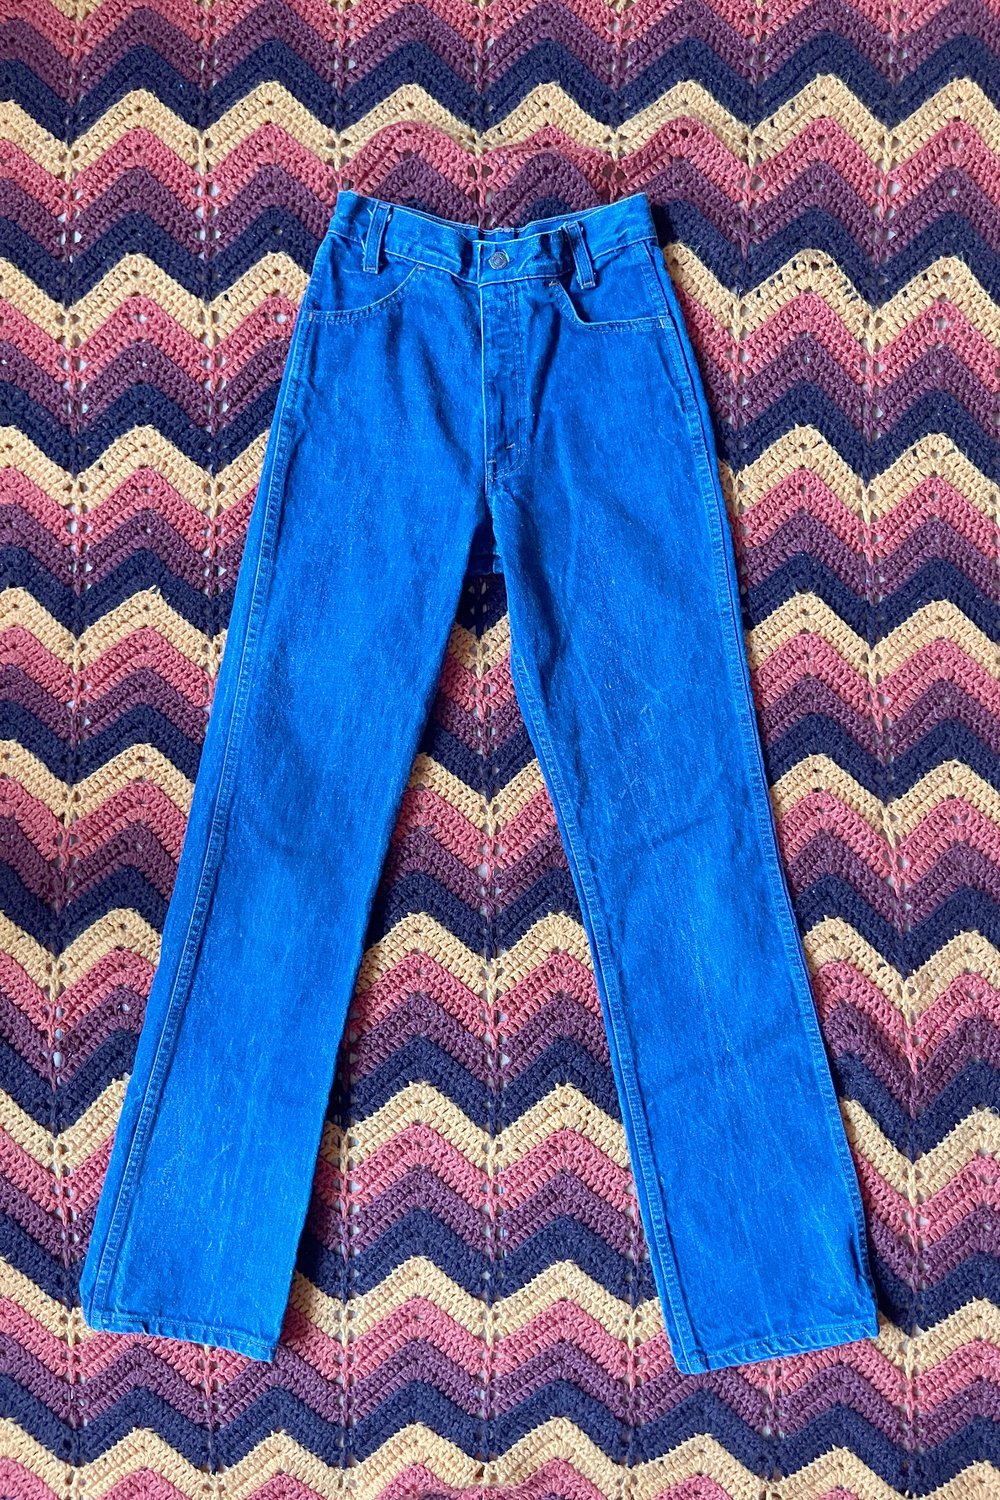 Vintage Levis Orange Tab Straight Leg Jeans size 28